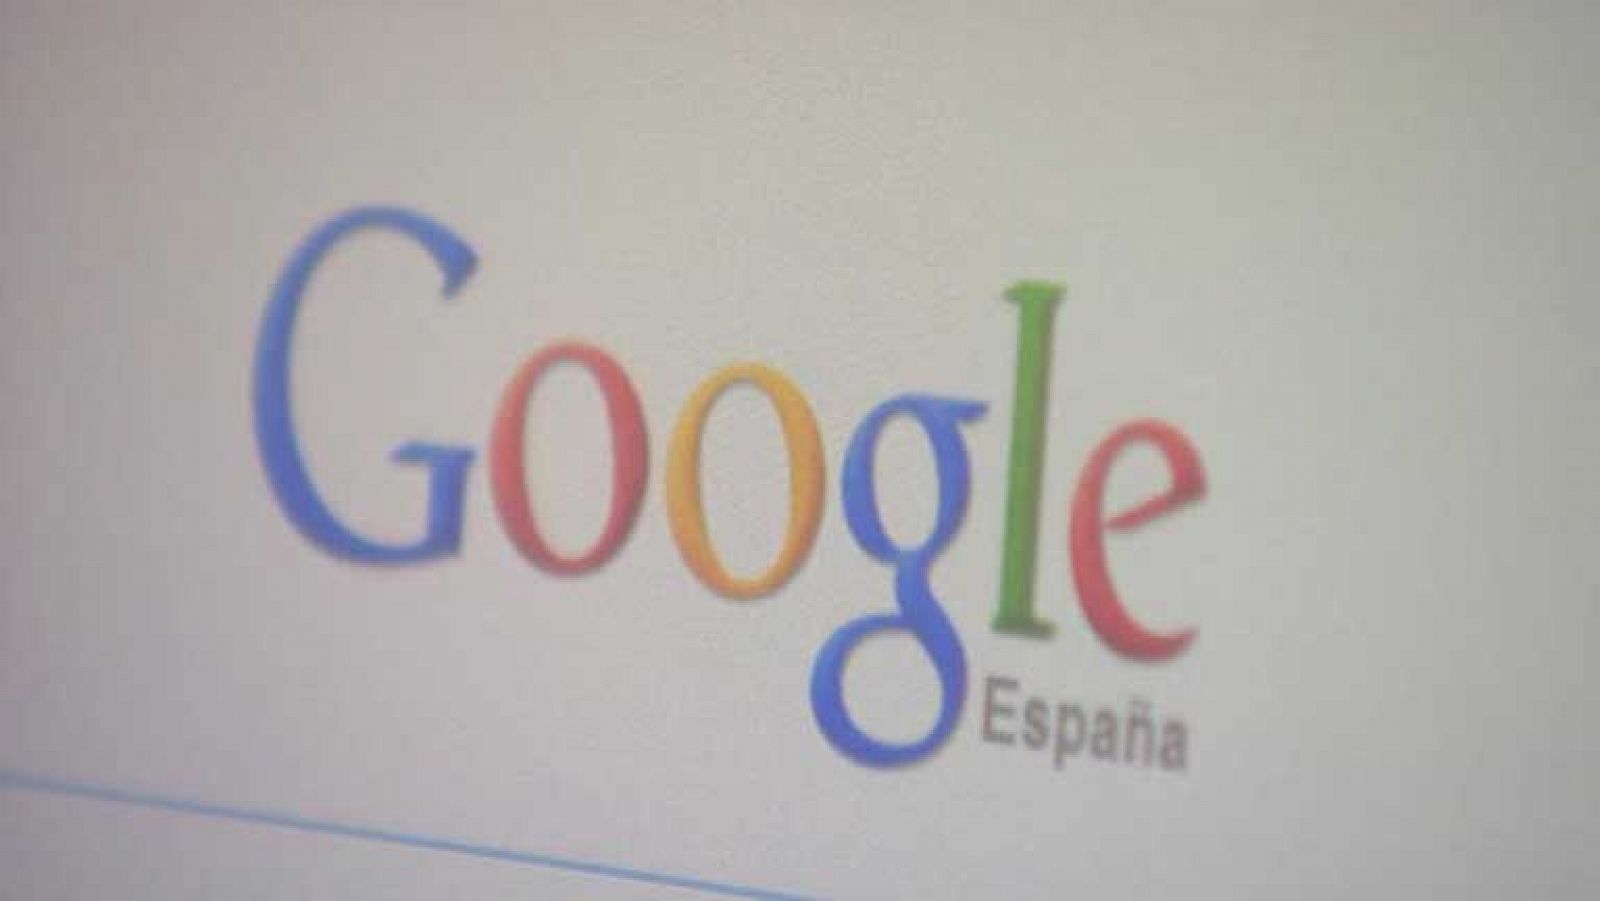 Los términos más buscados en Google España son prima de riesgo, Bankia o reforma laboral